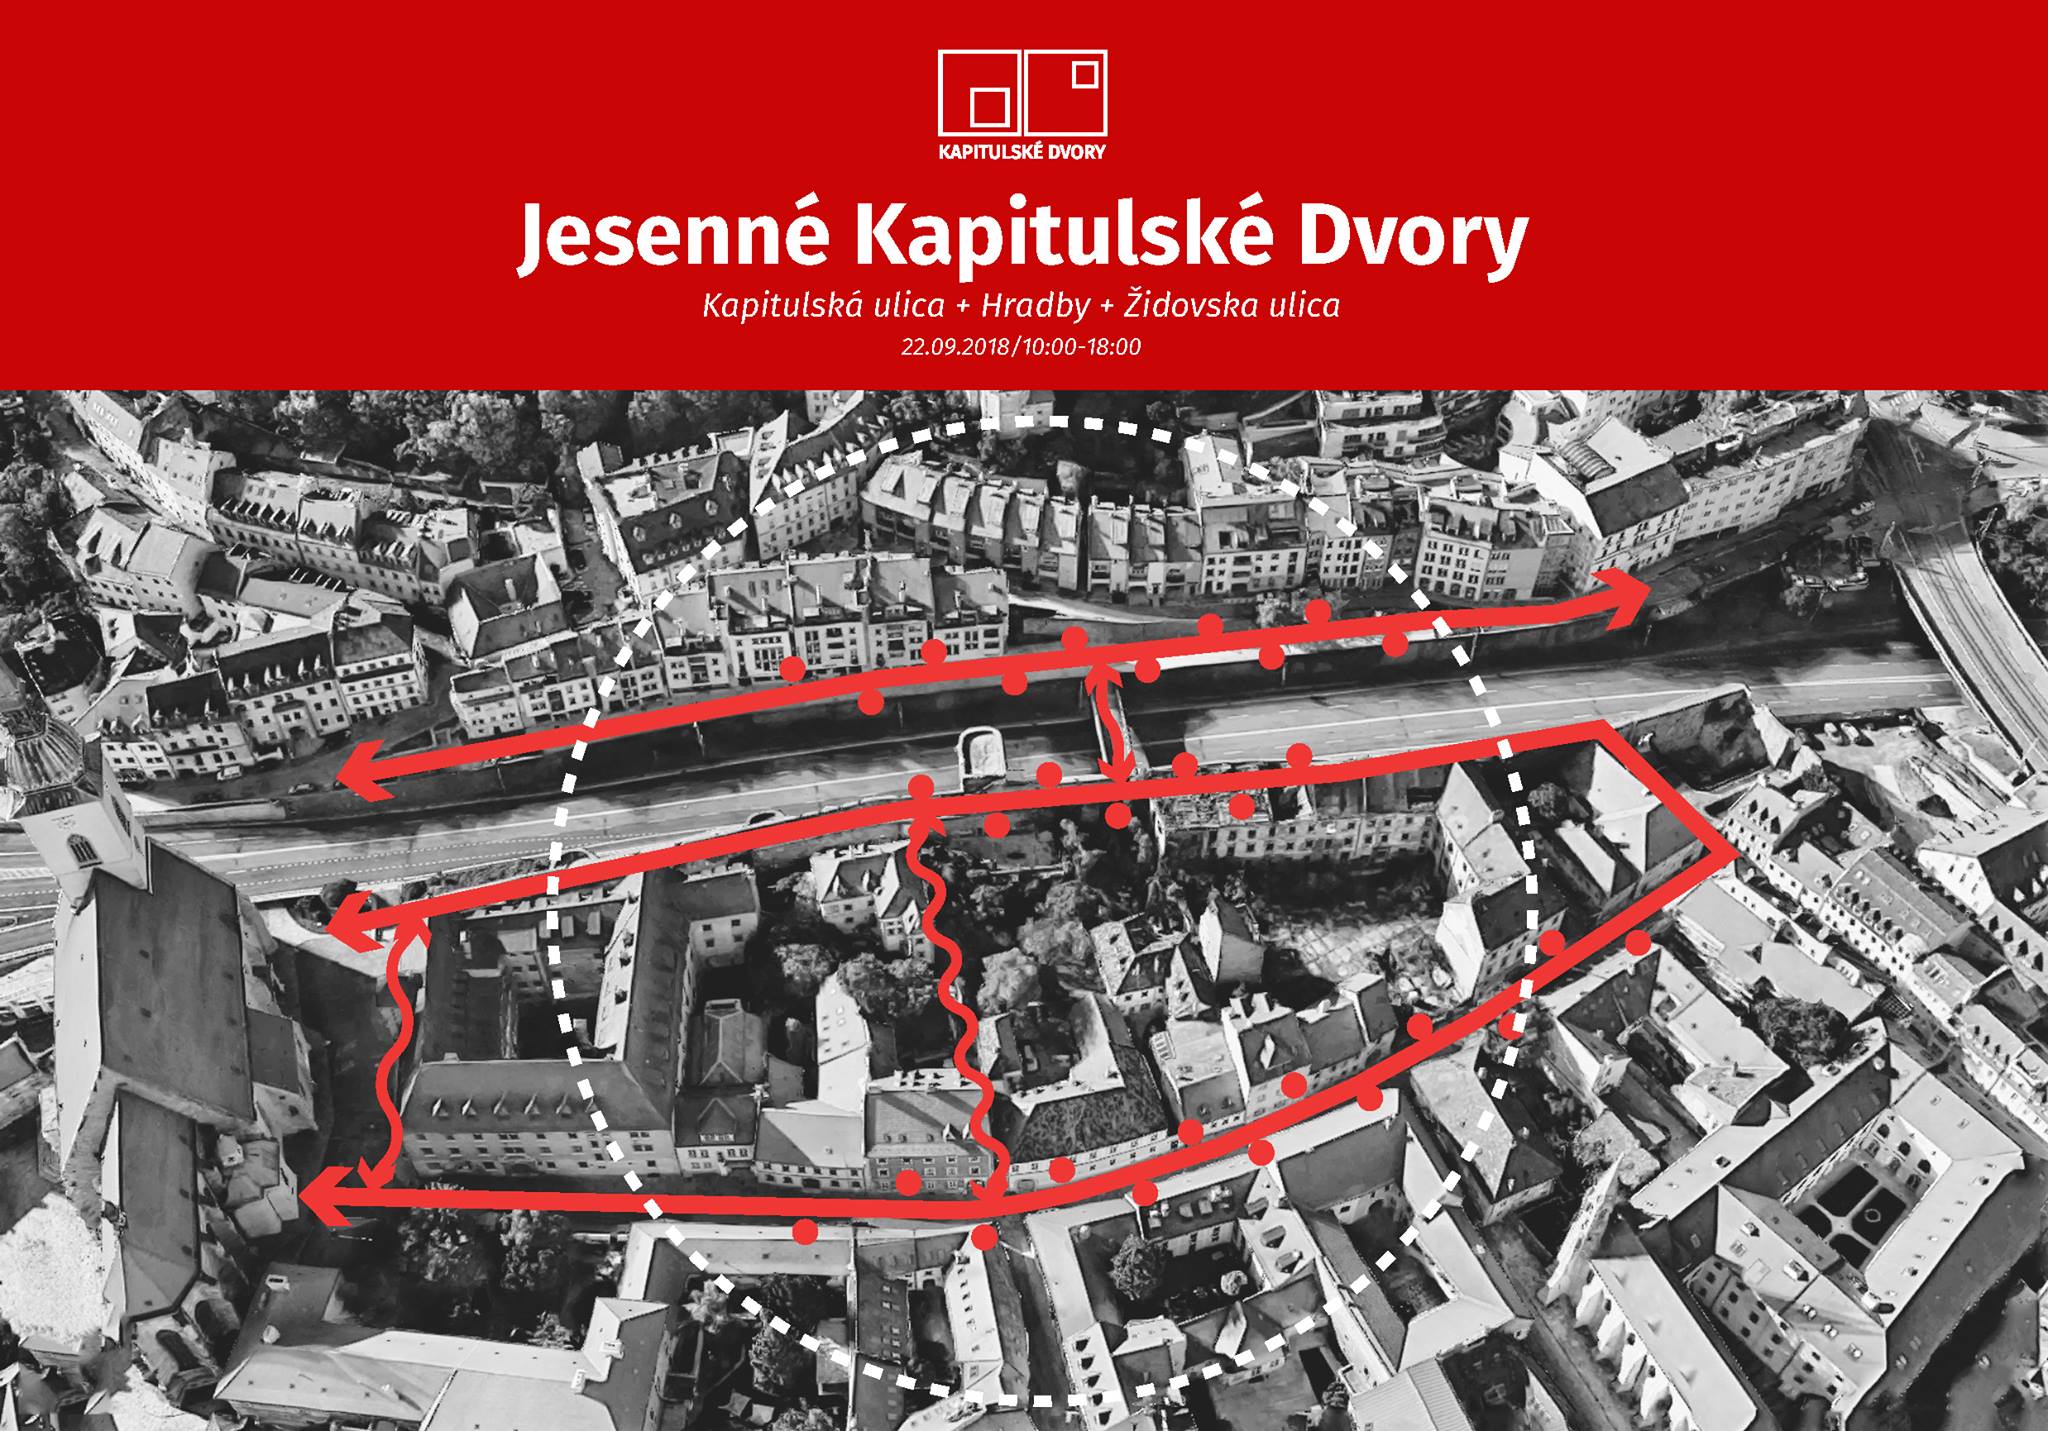 Jesenné Kapitulské dvory 2018 Bratislava - 4. ročník